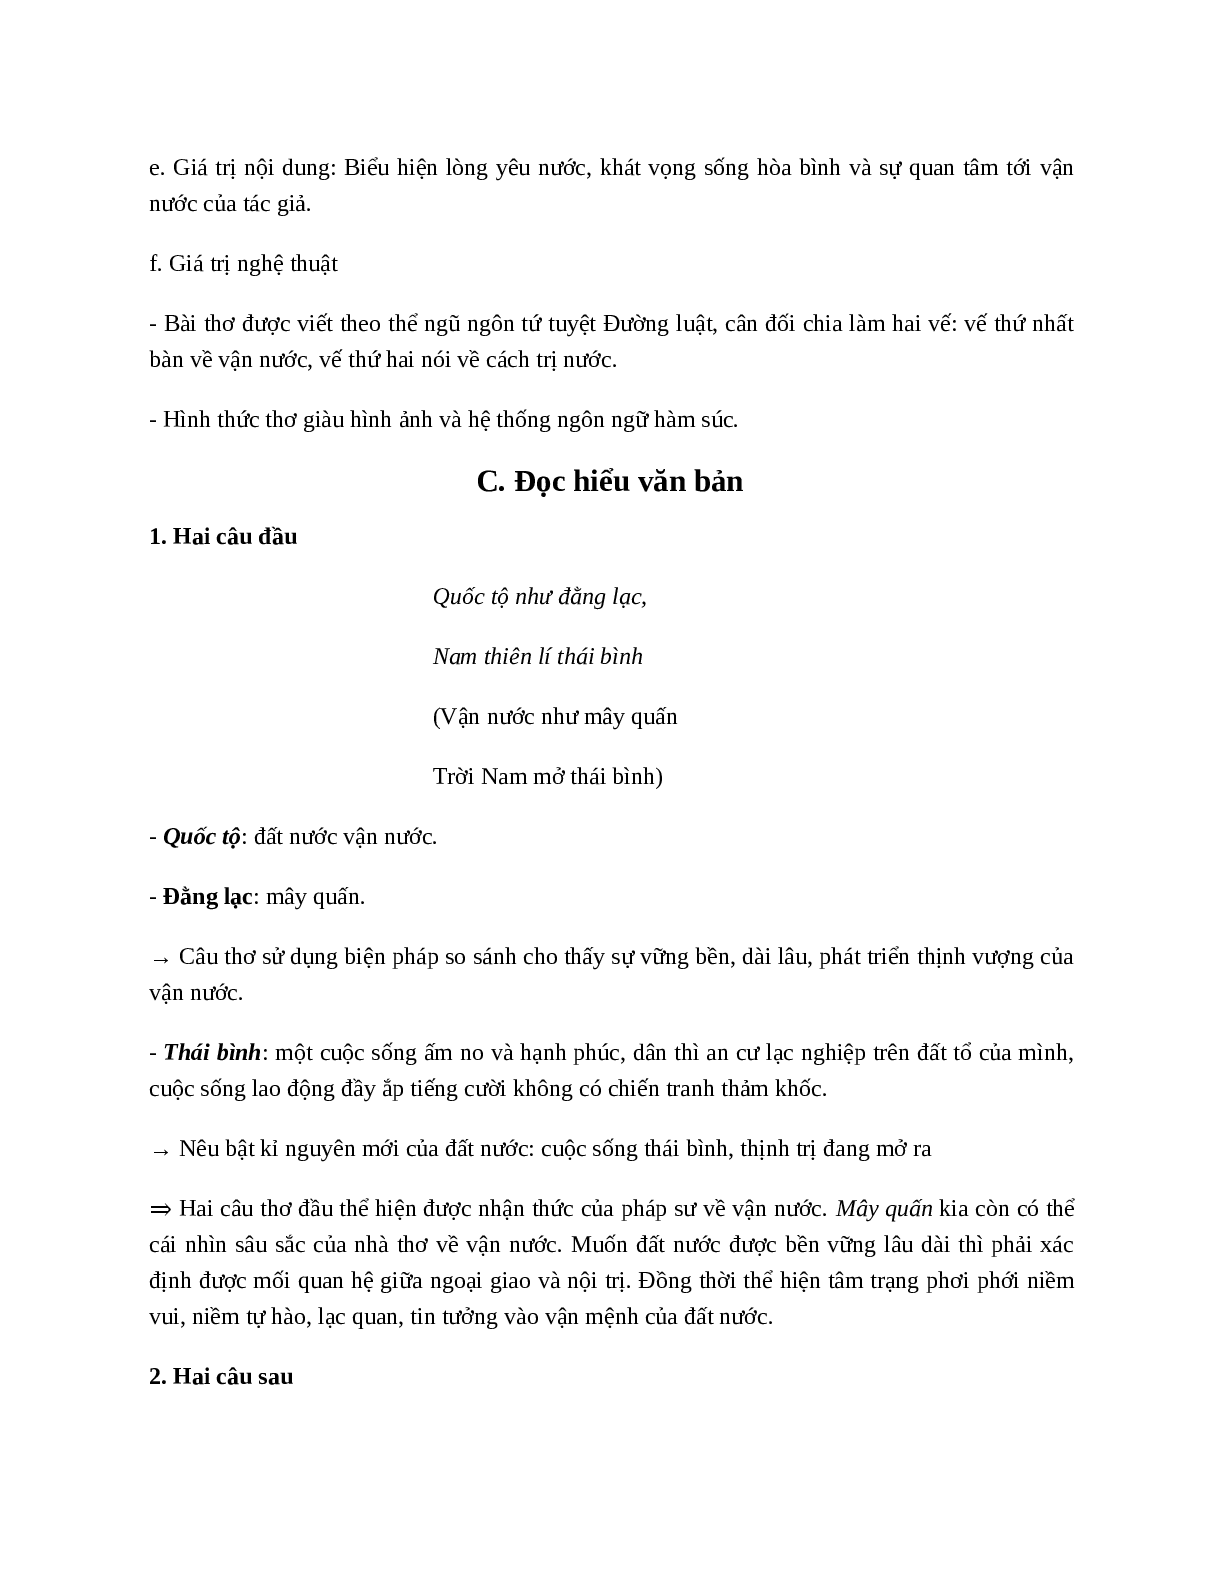 Vận nước (Quốc tộ) - Tác giả tác phẩm - Ngữ văn lớp 10 (trang 3)